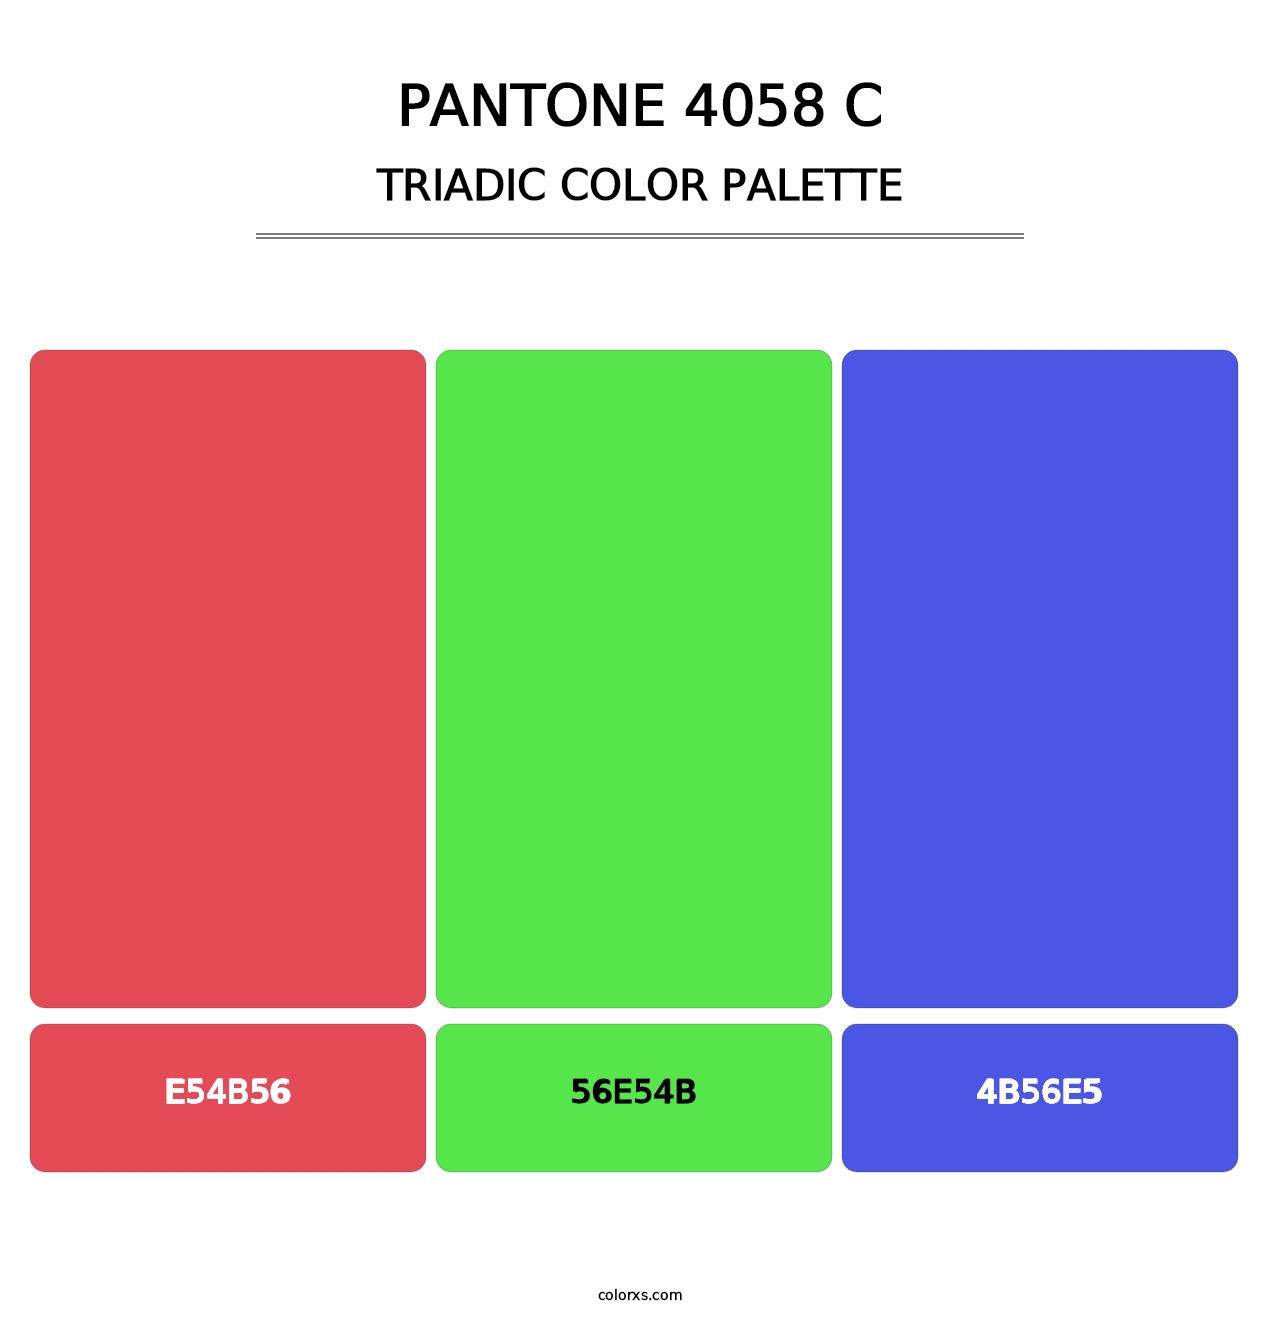 PANTONE 4058 C - Triadic Color Palette